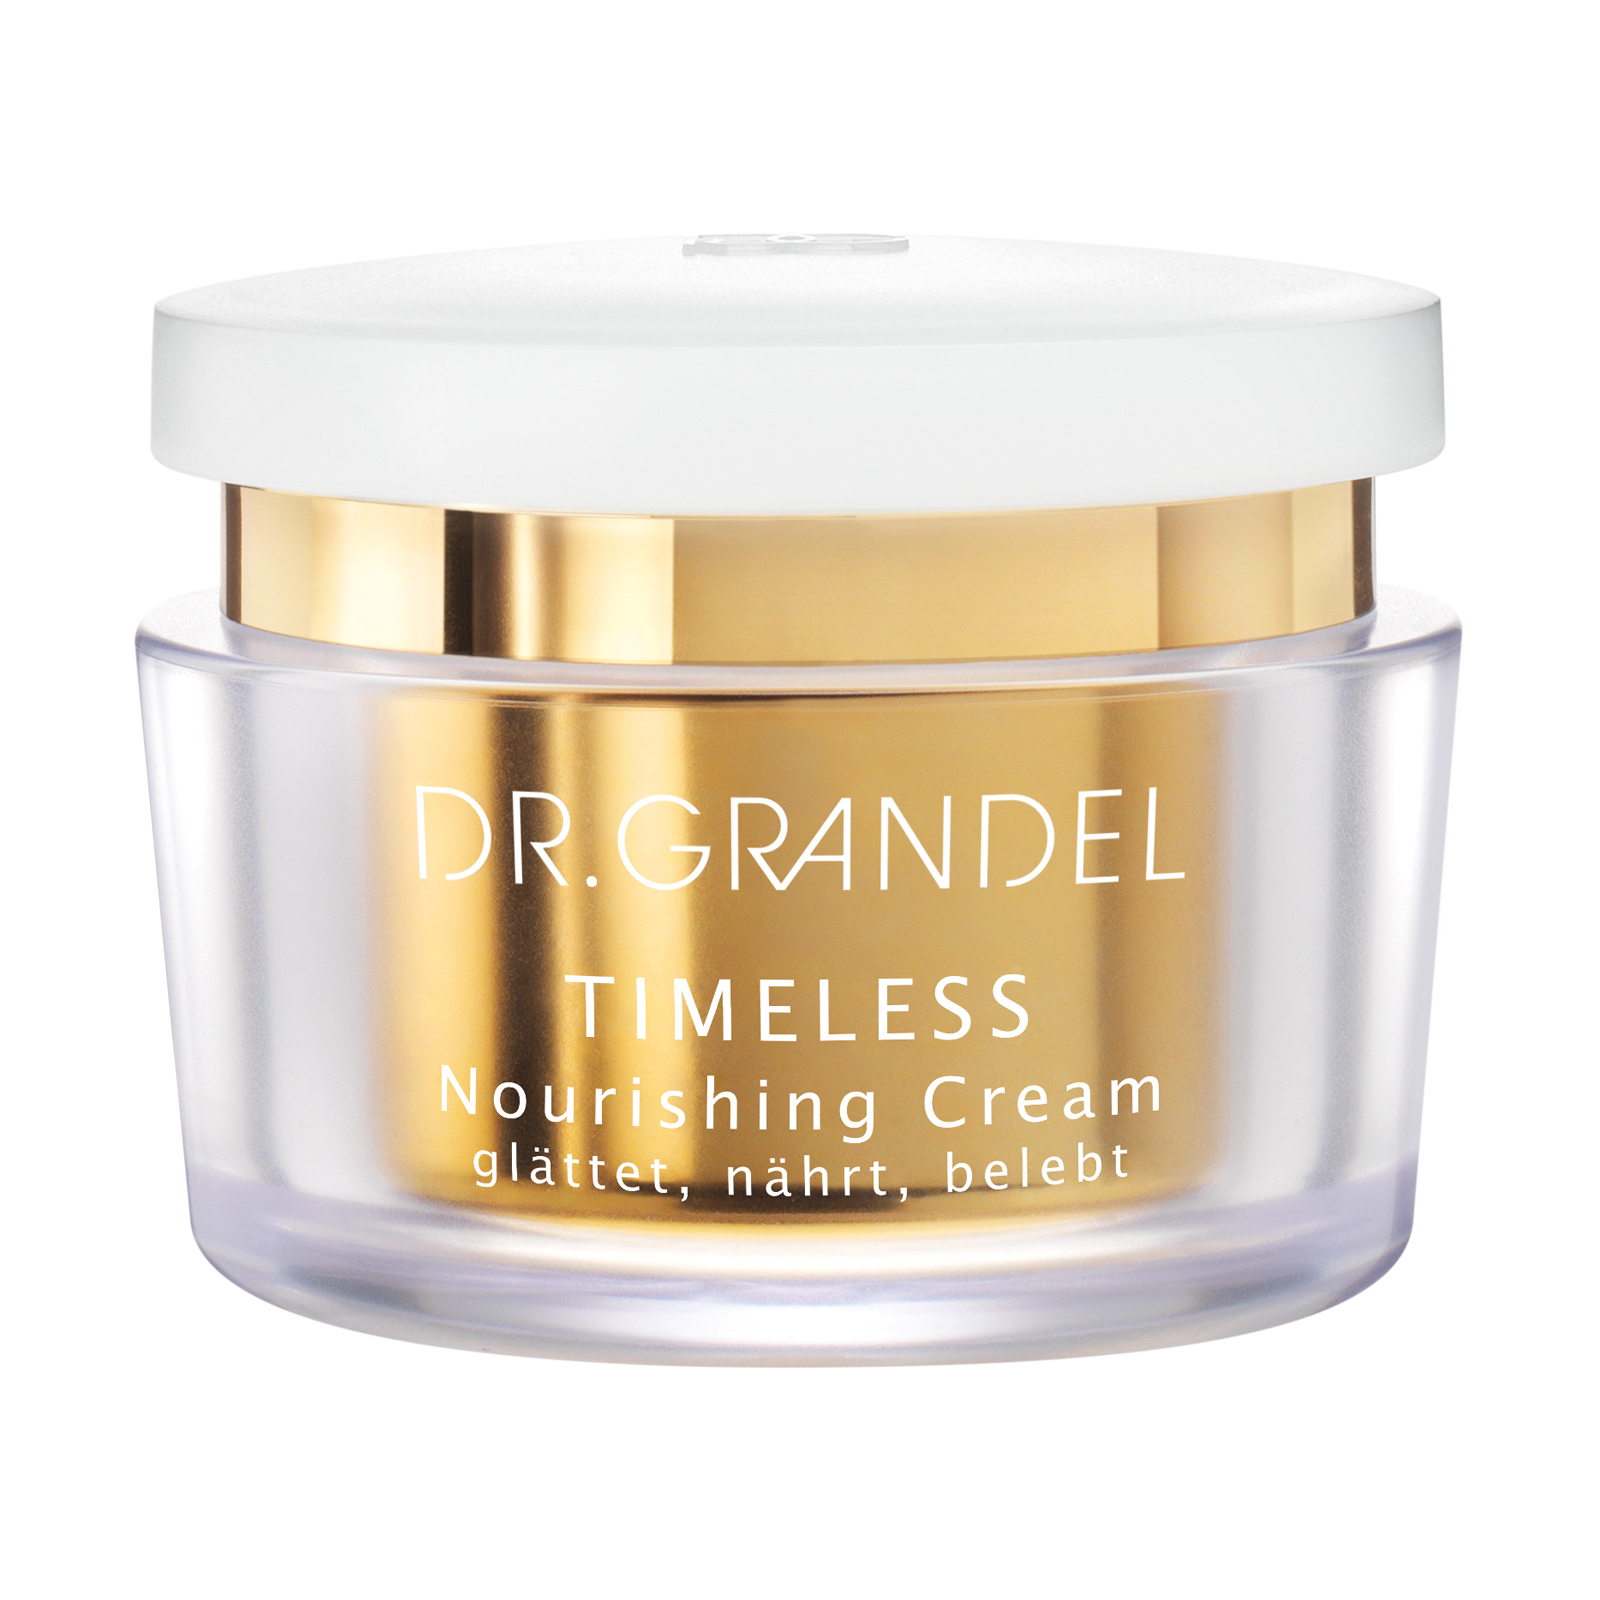 Dr. Grandel Timeless Nourishing Cream 50ml